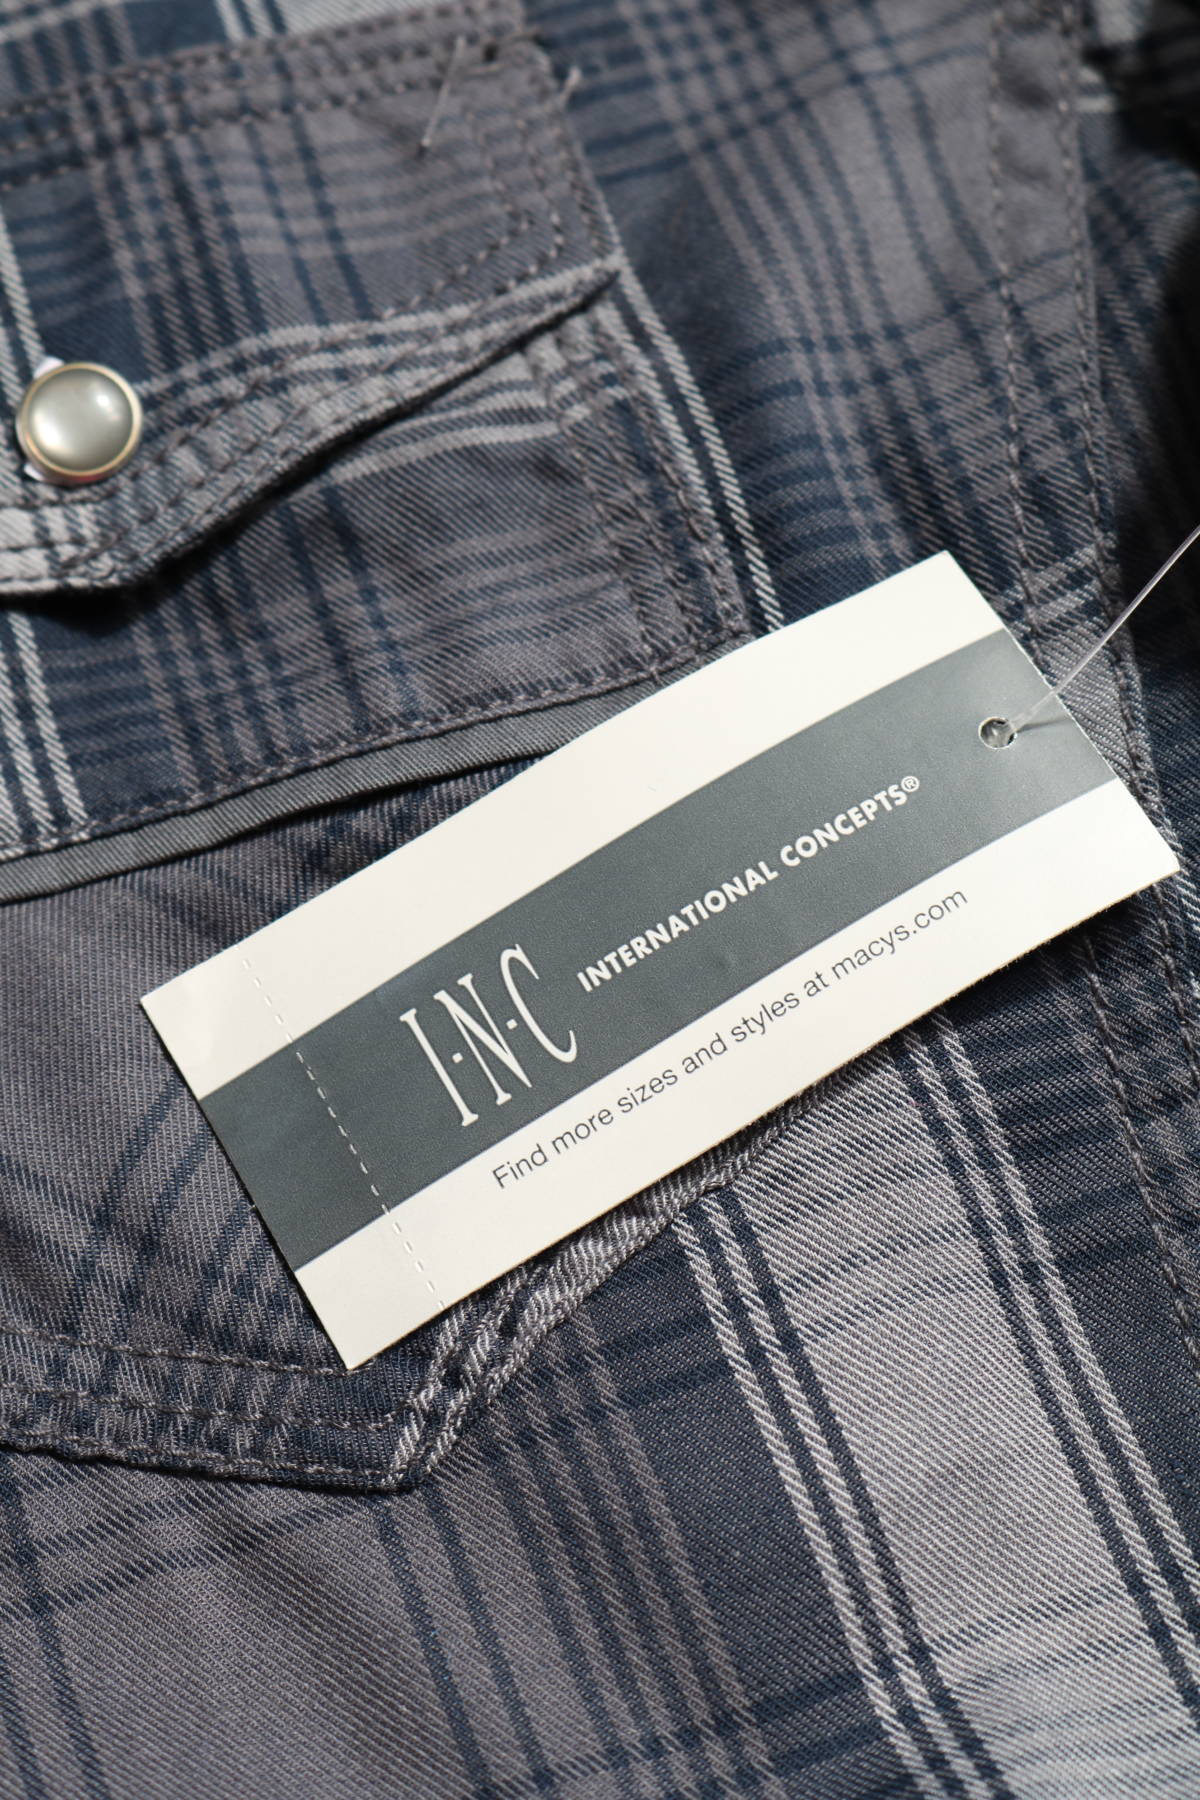 Риза I.N.C - INTERNATIONAL CONCEPTS3